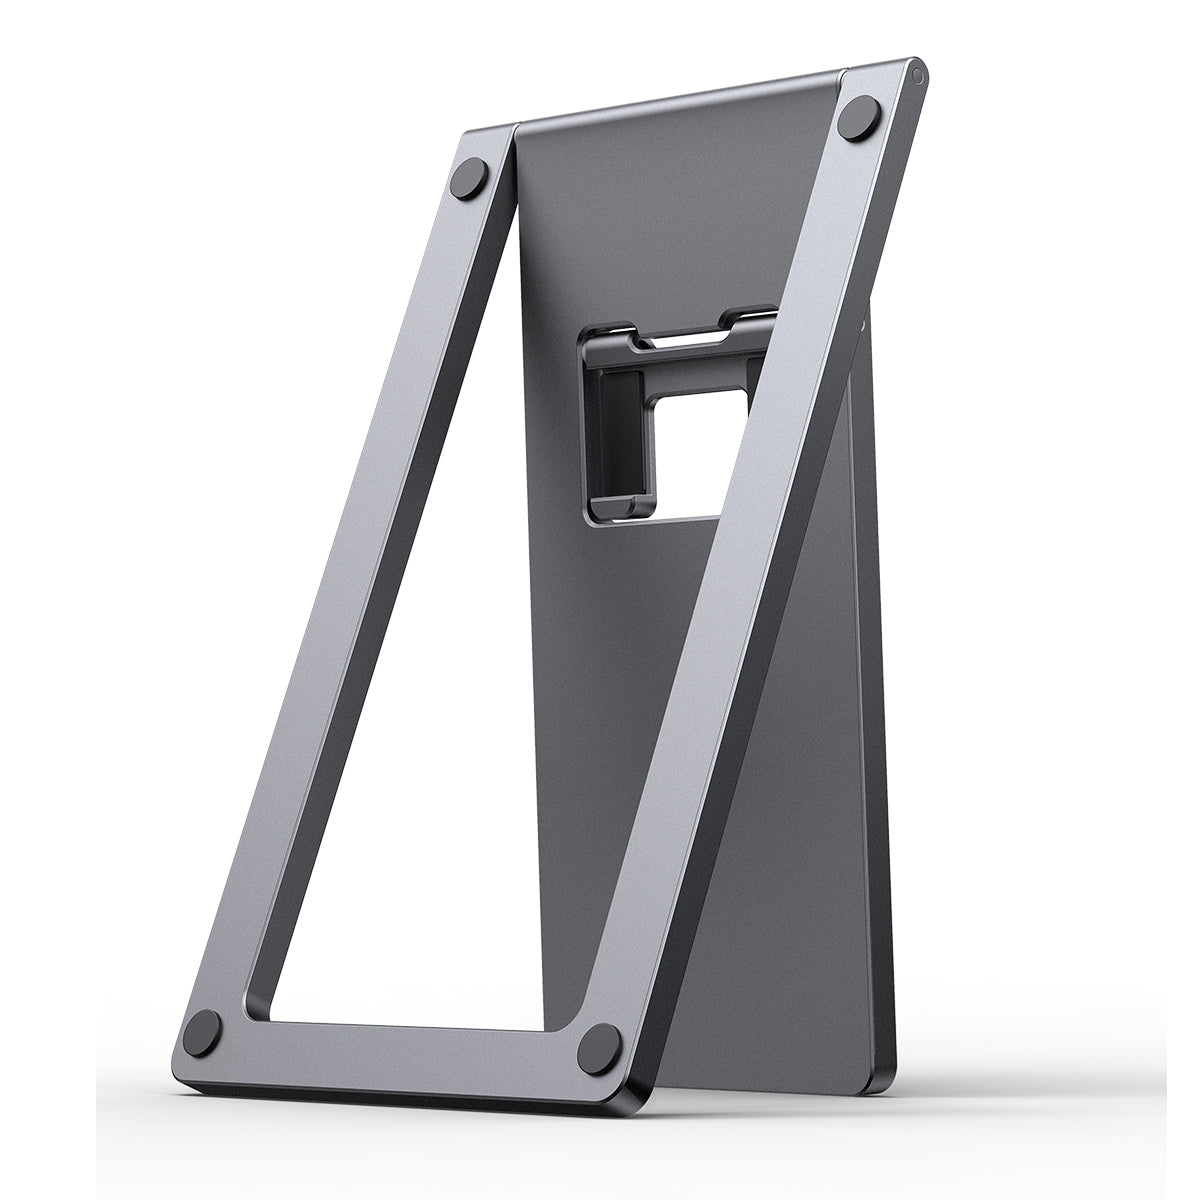 Foldable Metal Desktop Holder